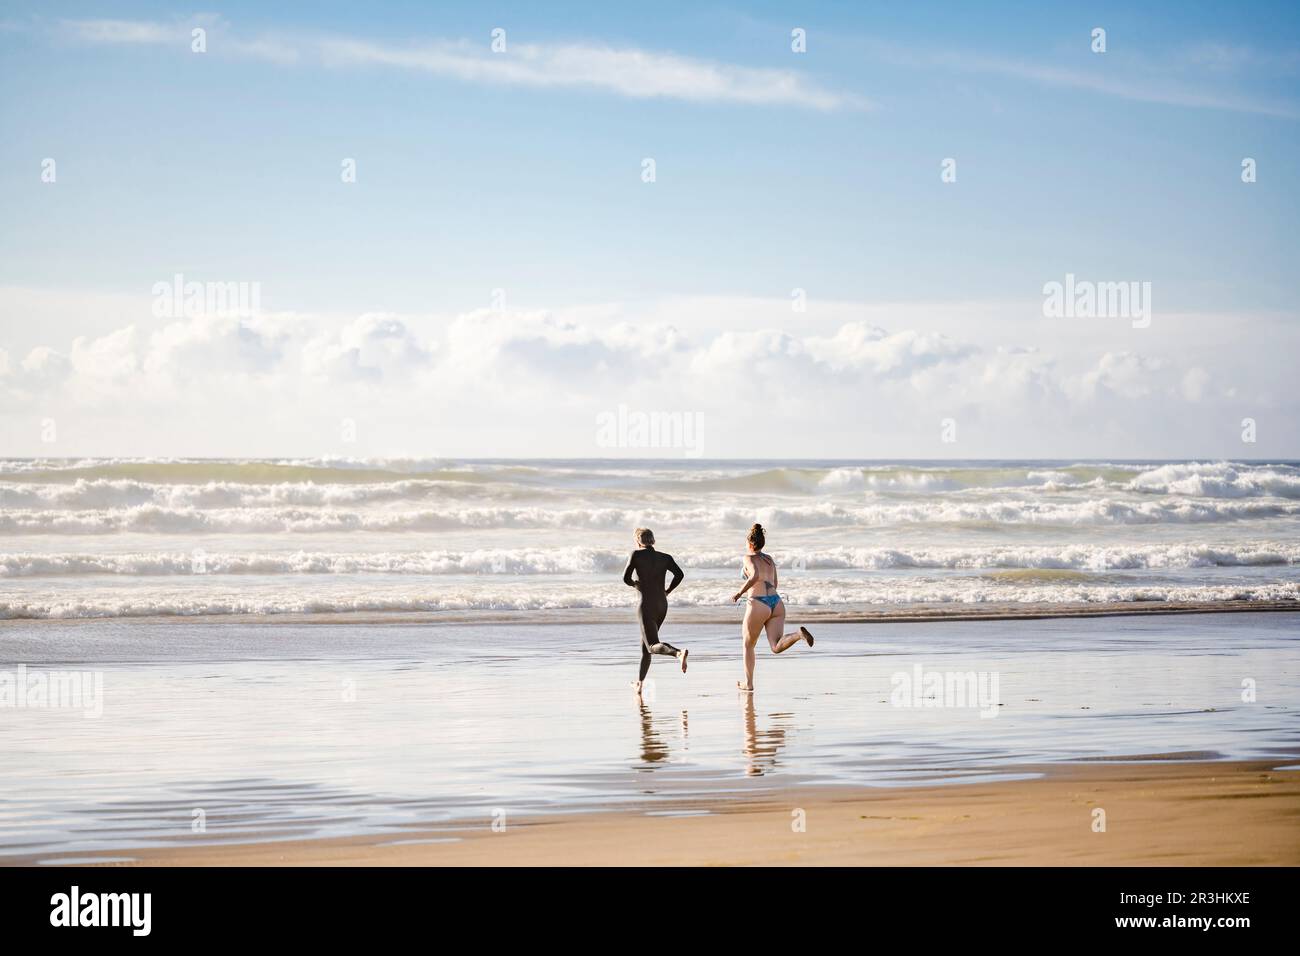 Un couple heureux s'est conduit pour nager dans les vagues du nord-ouest de l'océan Pacifique froid dans les rayons du soleil soluble dans la brume spray respirante sain air frais Banque D'Images